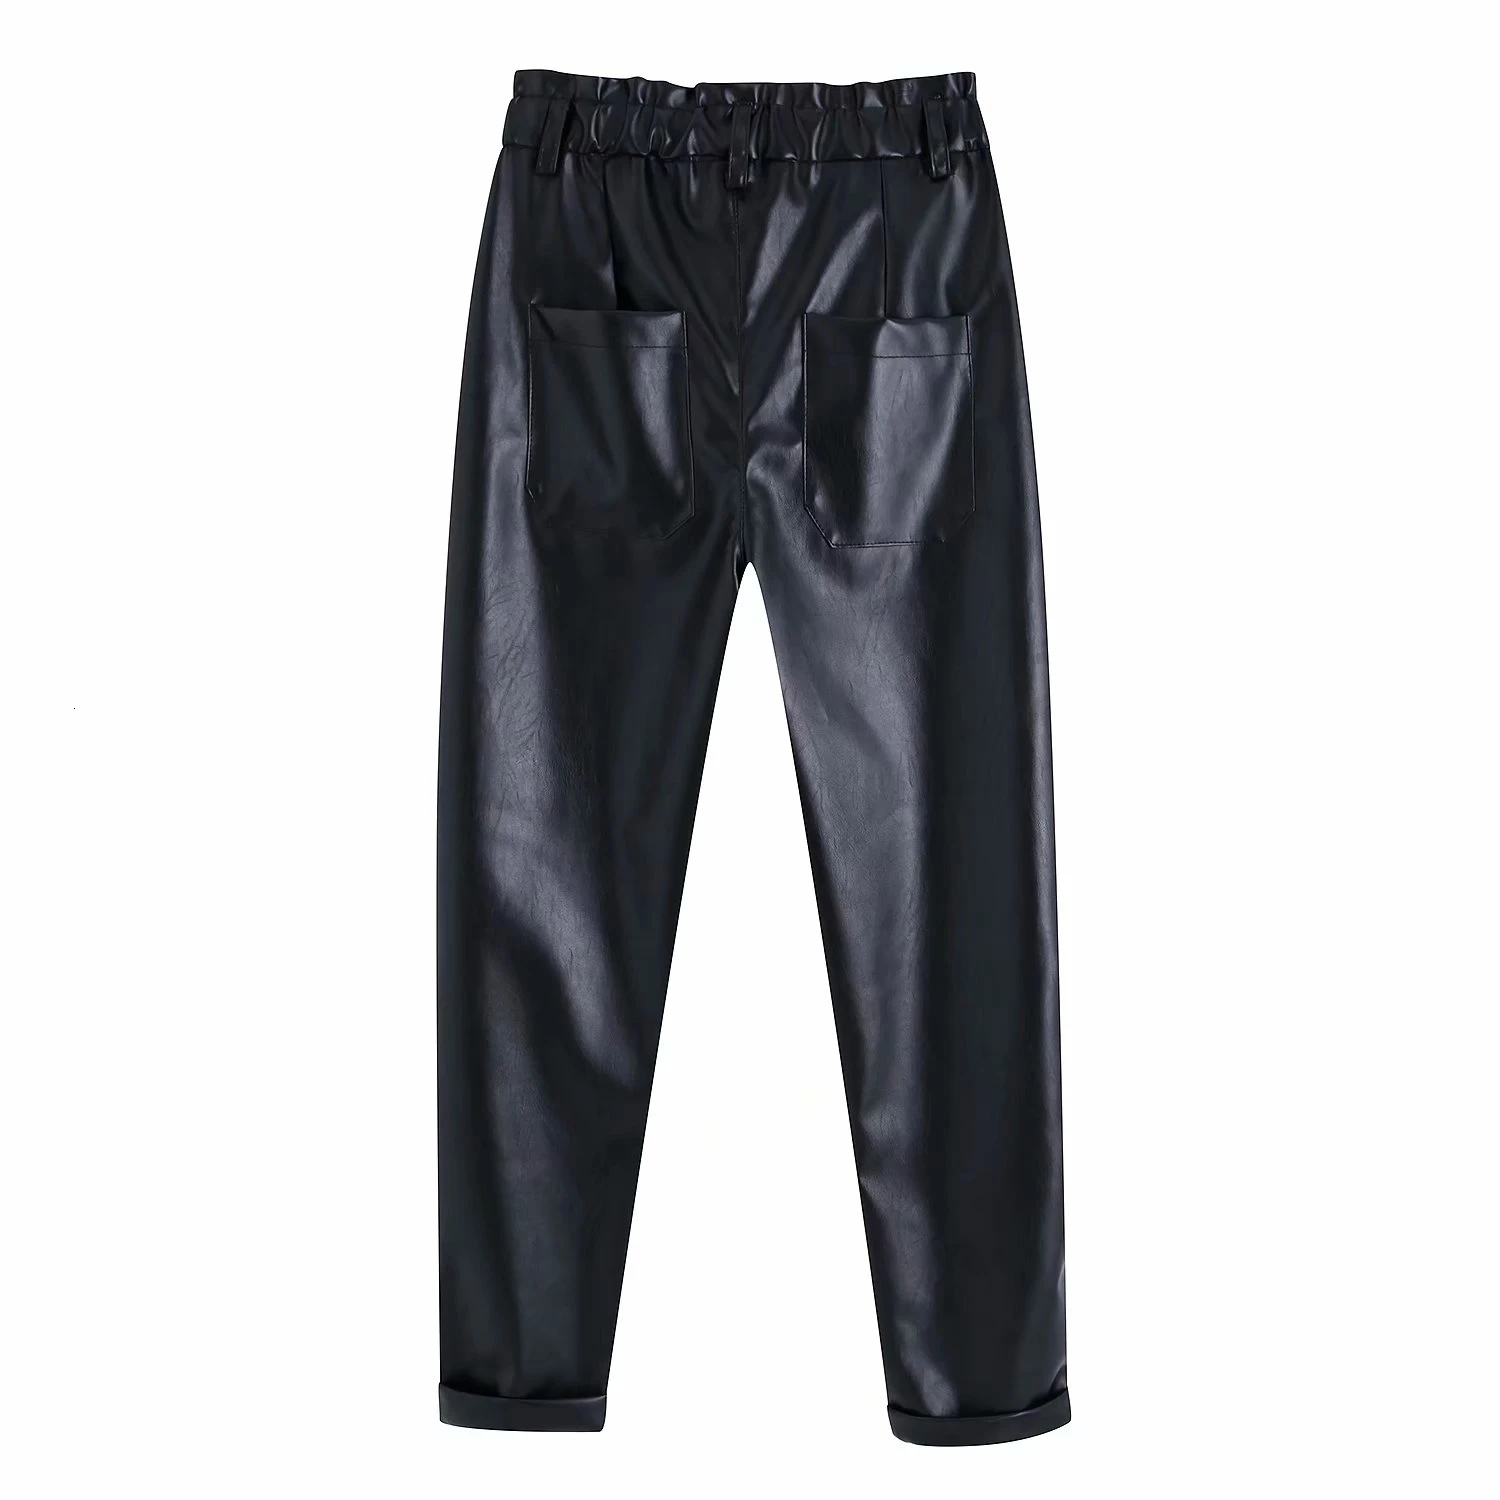 Модные брюки из искусственной кожи женские зимние брюки карандаш элегантные брюки с высокой талией женские брюки в стиле хип-хоп черные брюки уличная одежда